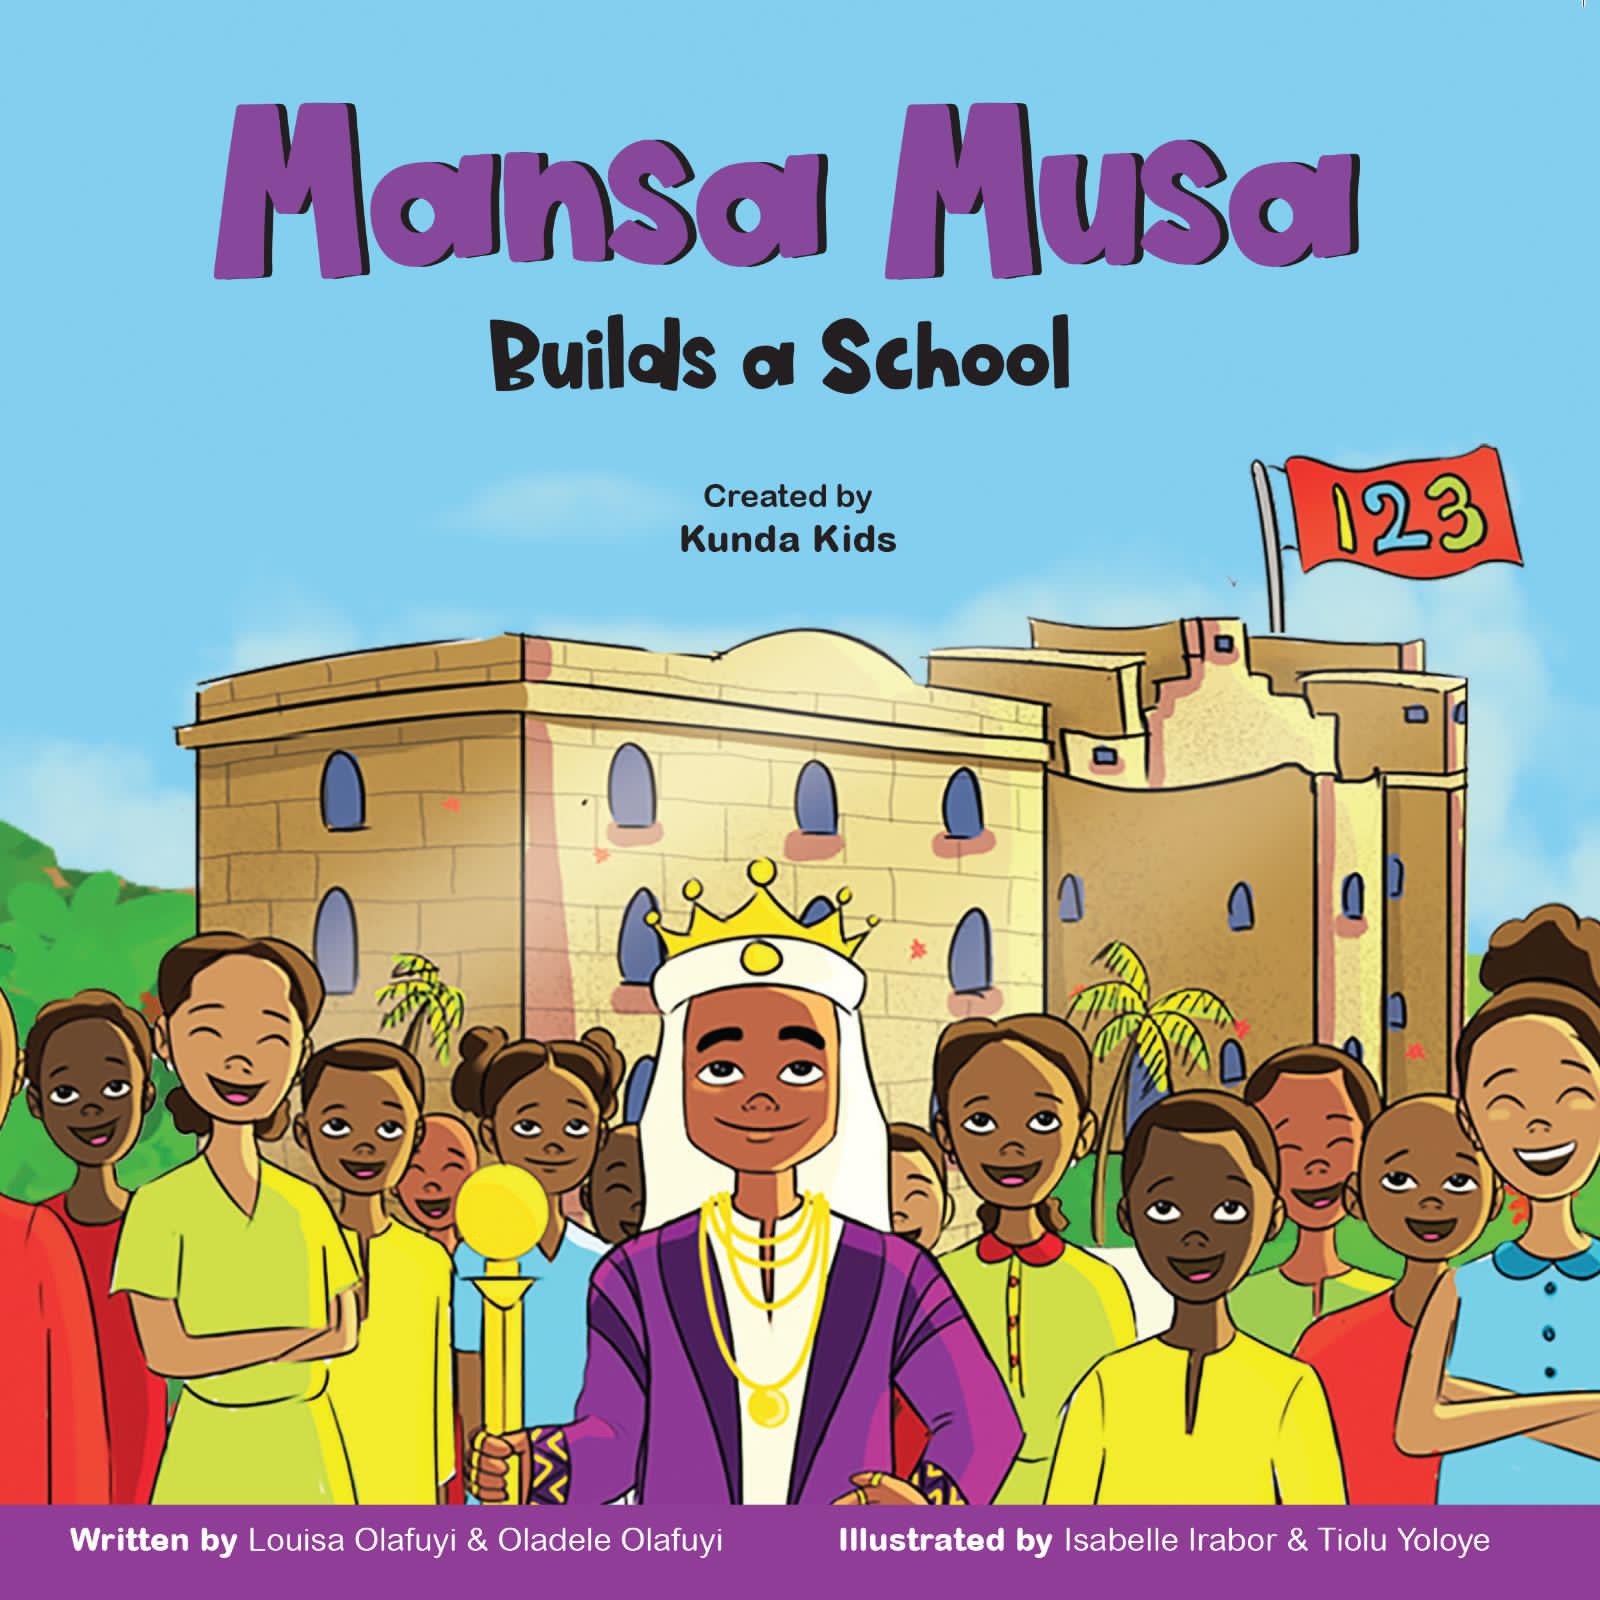 MANSA MUSA BUILDS A SCHOOL